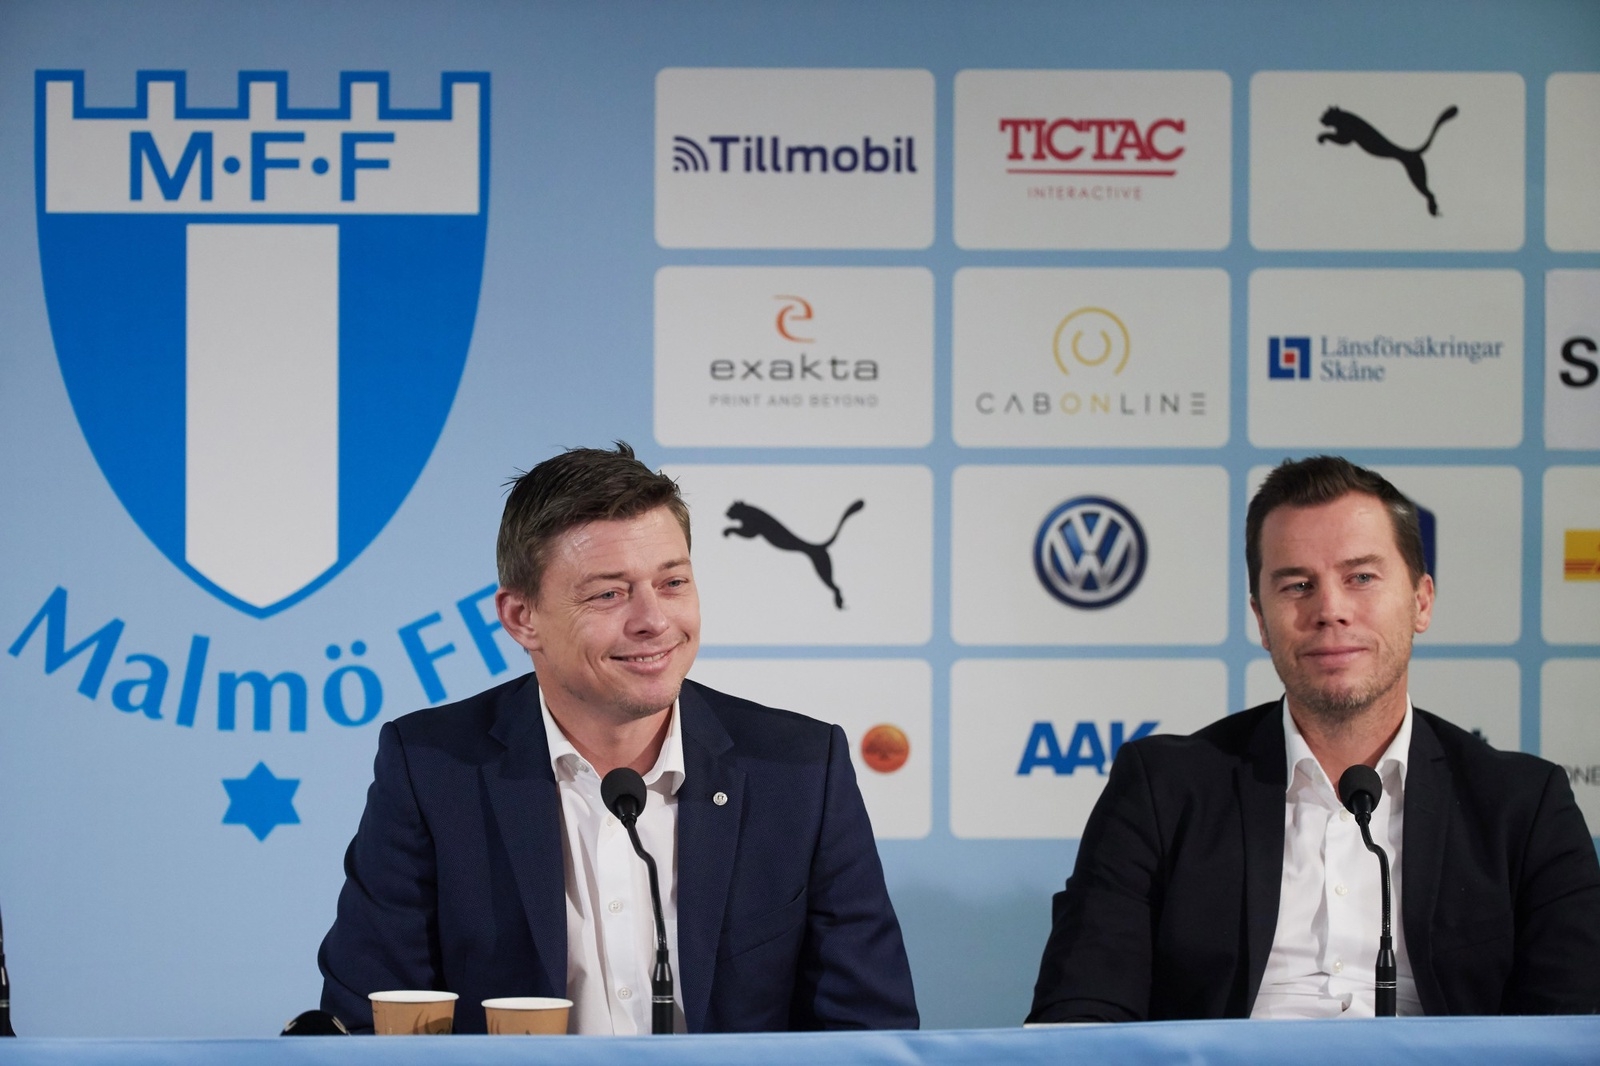 Dansken Jon Dahl Tomasson (tv) presenteras som ny tränare för Malmö FF vid en presskonferens på hemmaarenan Stadion. Här med MFF:s sportchef Daniel Andersson.
Foto Andreas Hillergren / TT